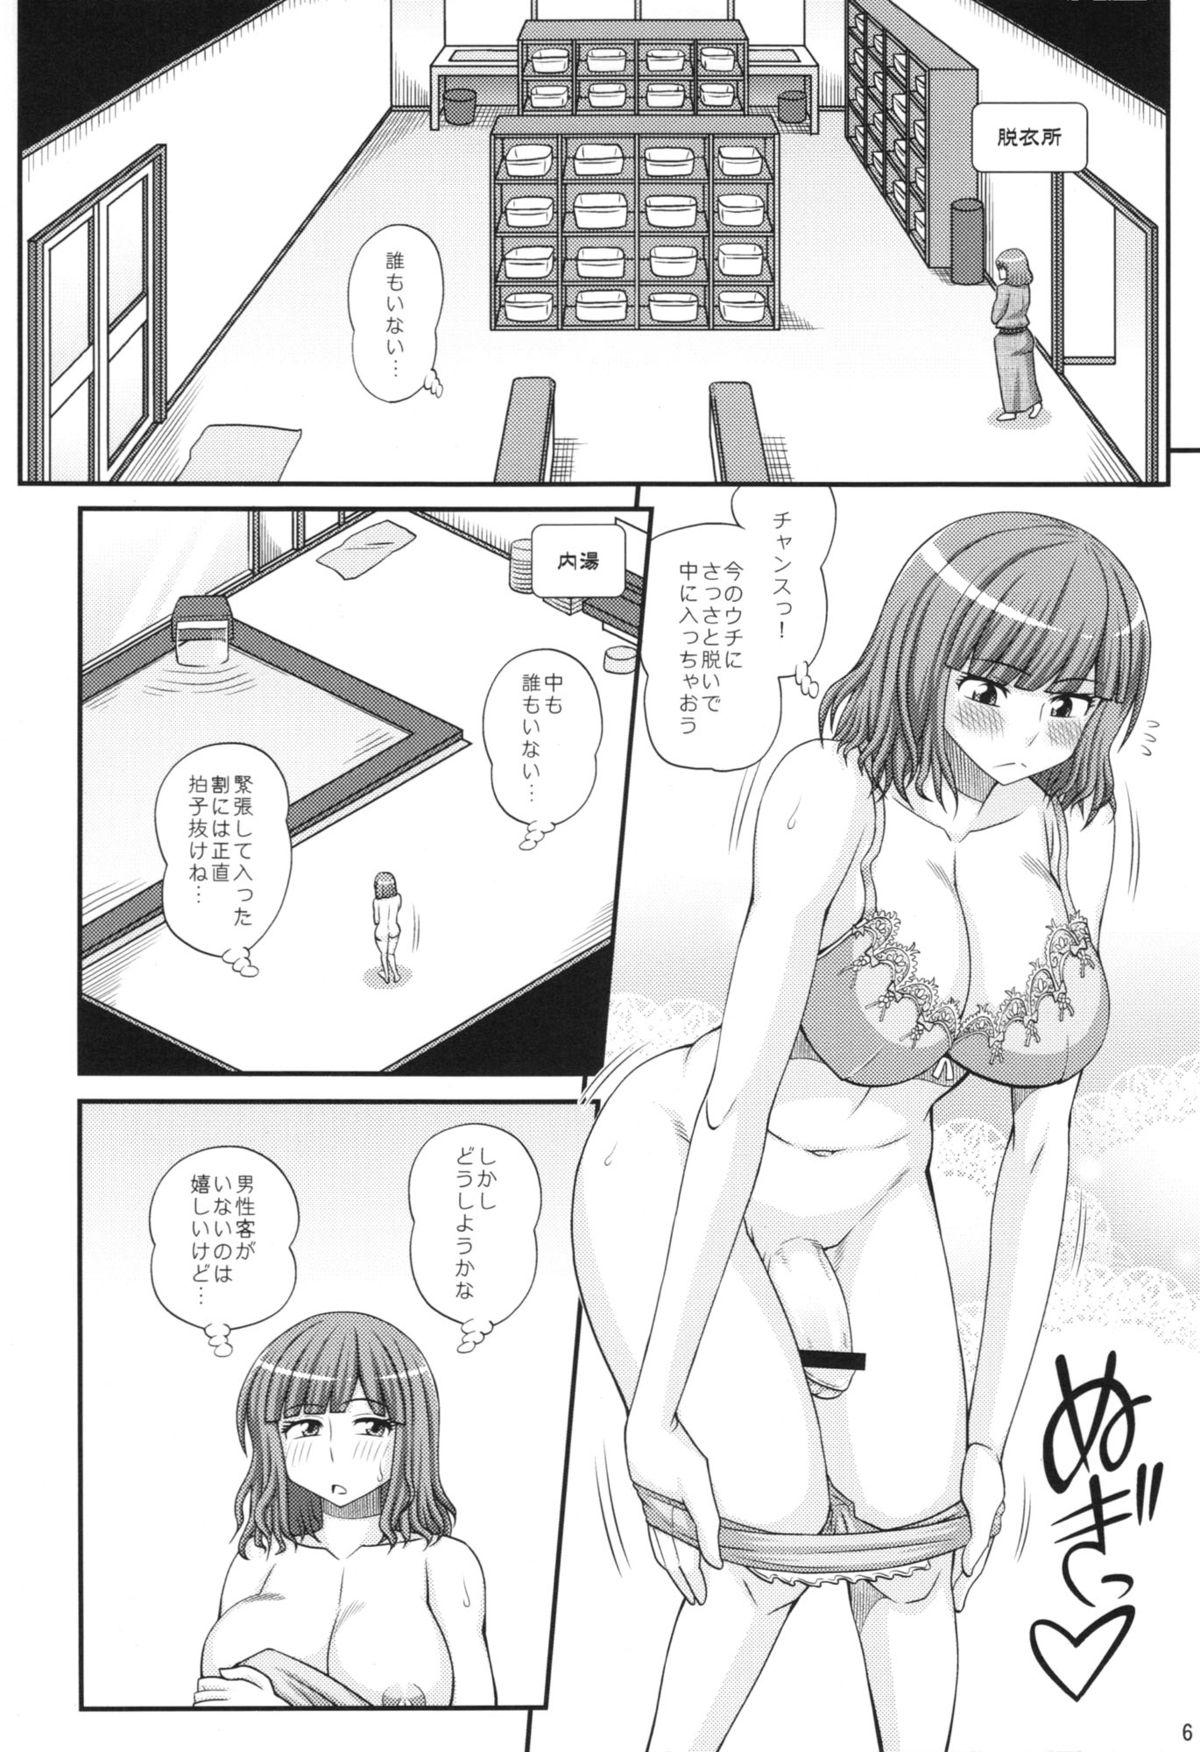 Pene Futanari Musume Otokoyu Mission 2 Hd Porn - Page 6